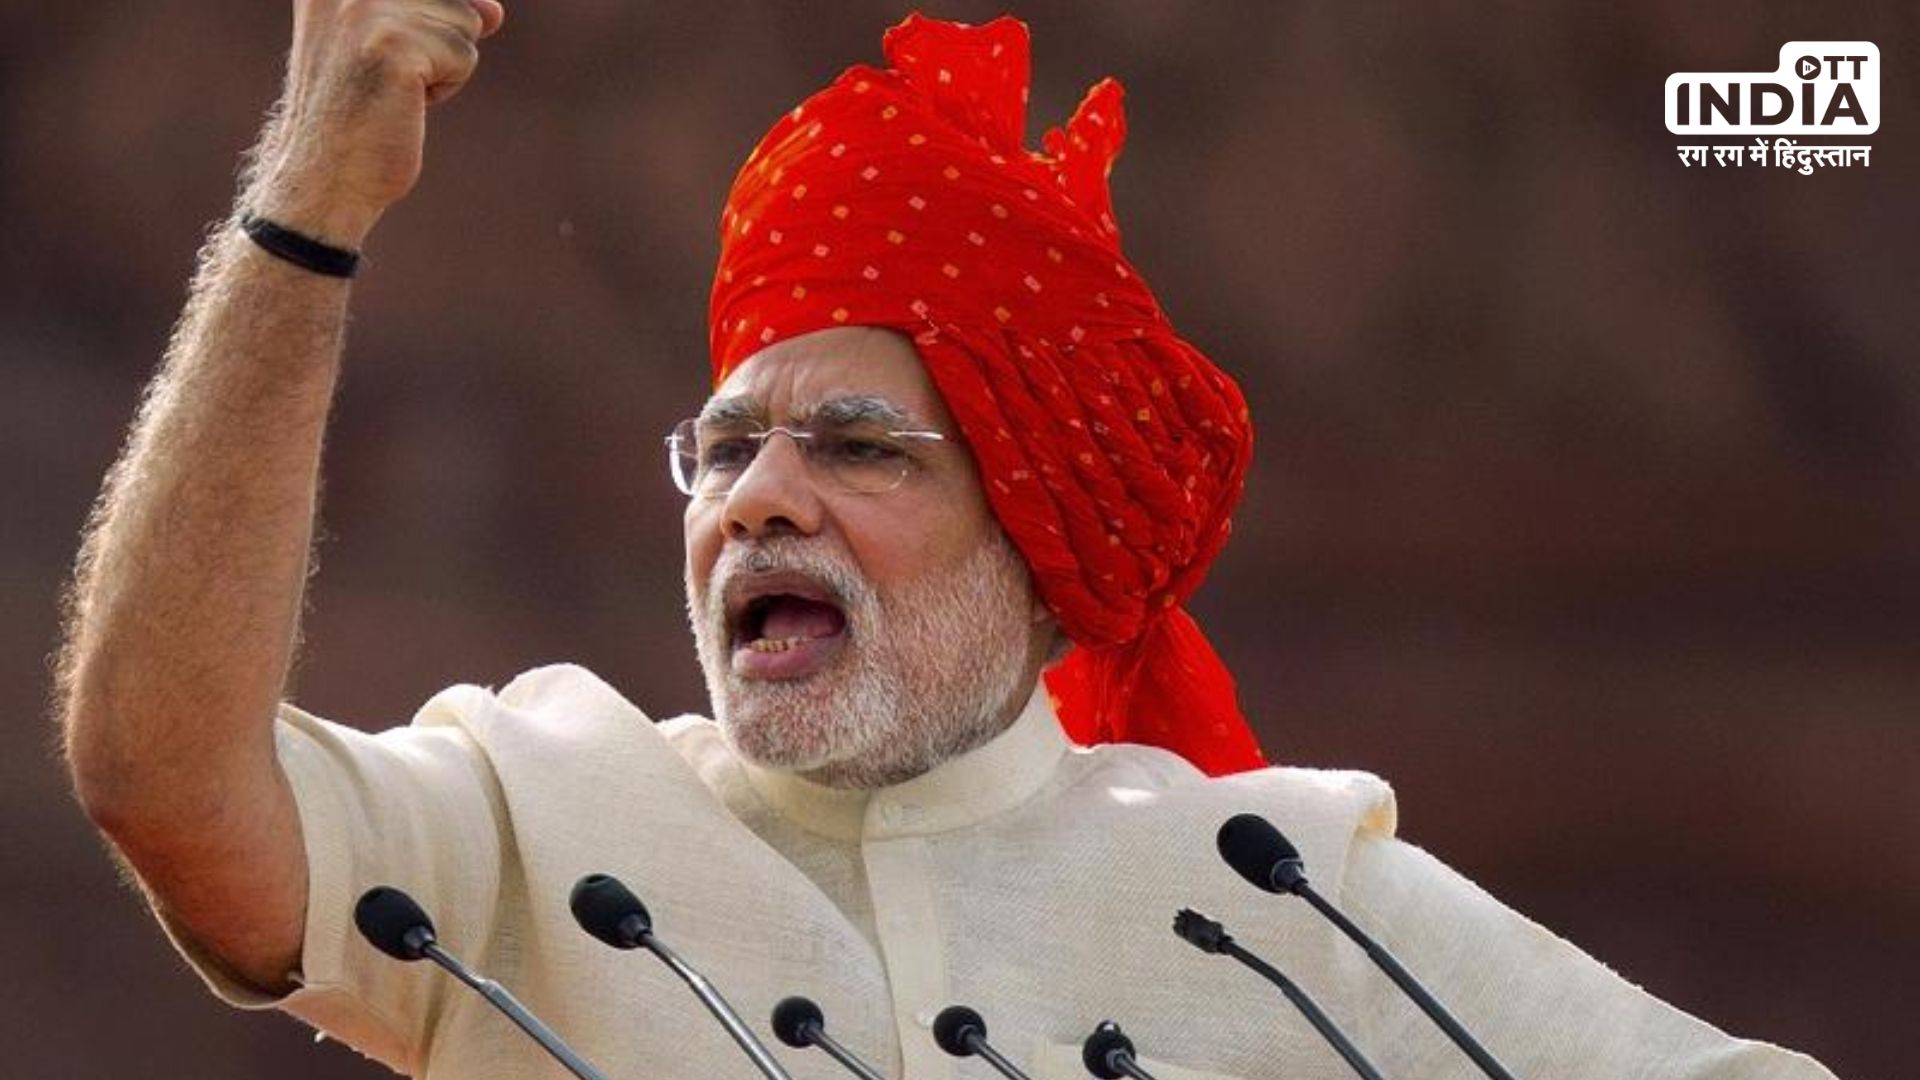 Global Times praises PM Modi : चीनी अखबार ग्लोबल टाइम्स ने की पीएम मोदी की तारीफ, विश्व में बज रहा भारत का डंका…